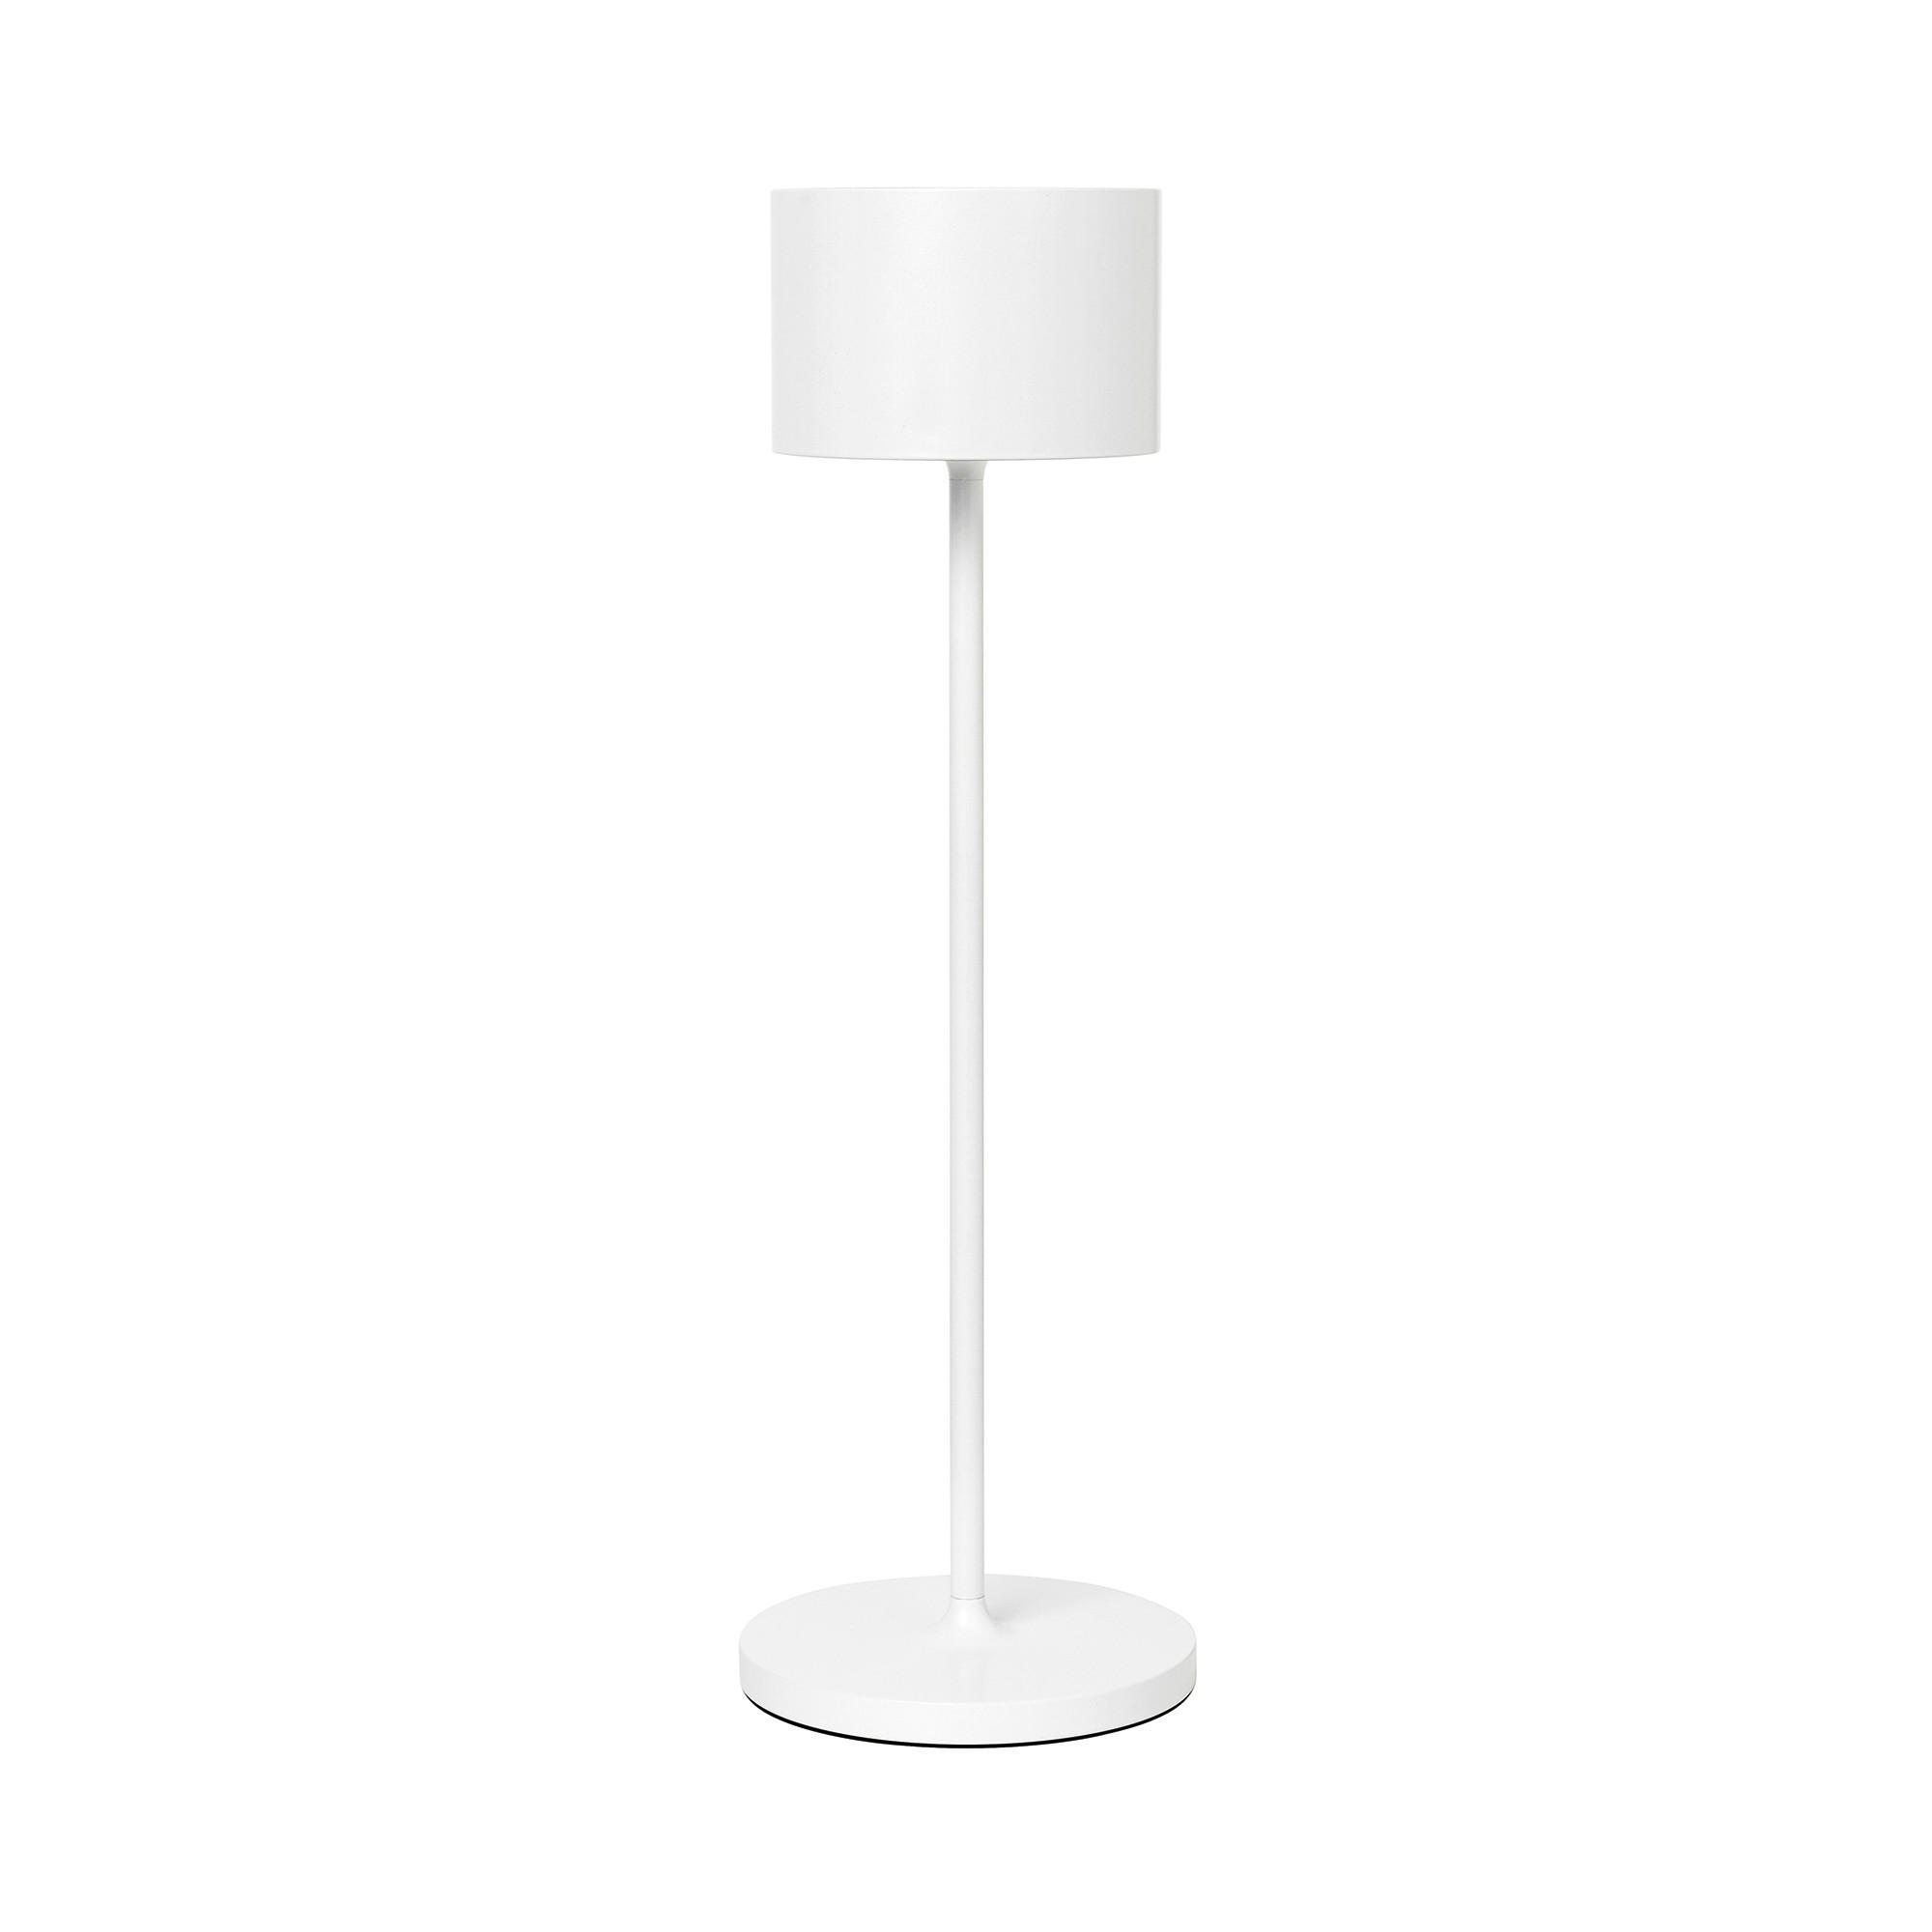 LED-TISCHLEUCHTE 11/33,5 cm   - Weiß, Design, Metall (11/33,5cm) - Blomus